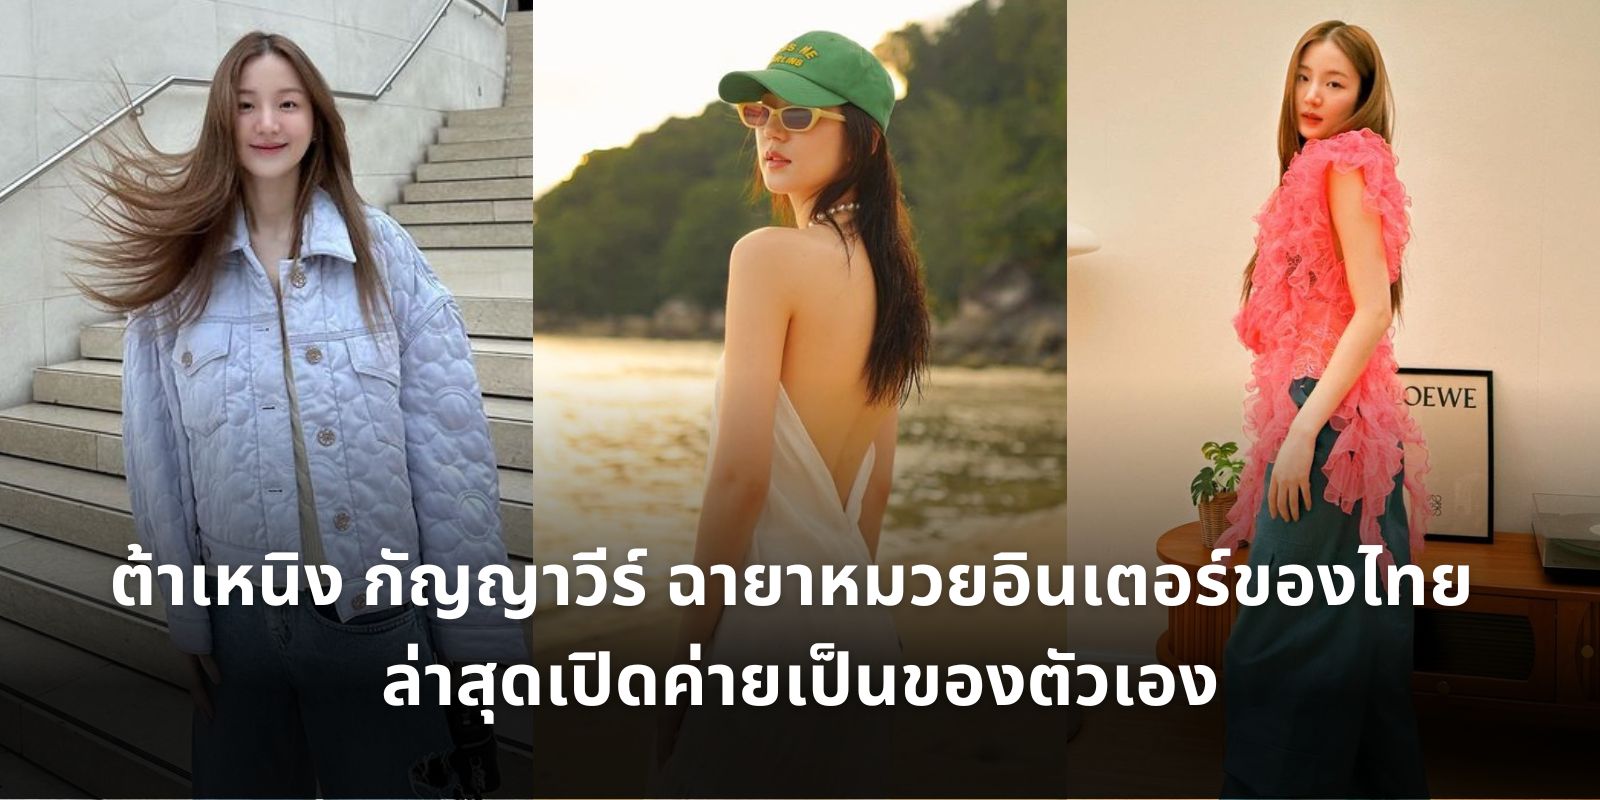 ต้าเหนิง กัญญาวีร์ ฉายาหมวยอินเตอร์ของไทย ล่าสุดเปิดค่ายเป็นของตัวเอง